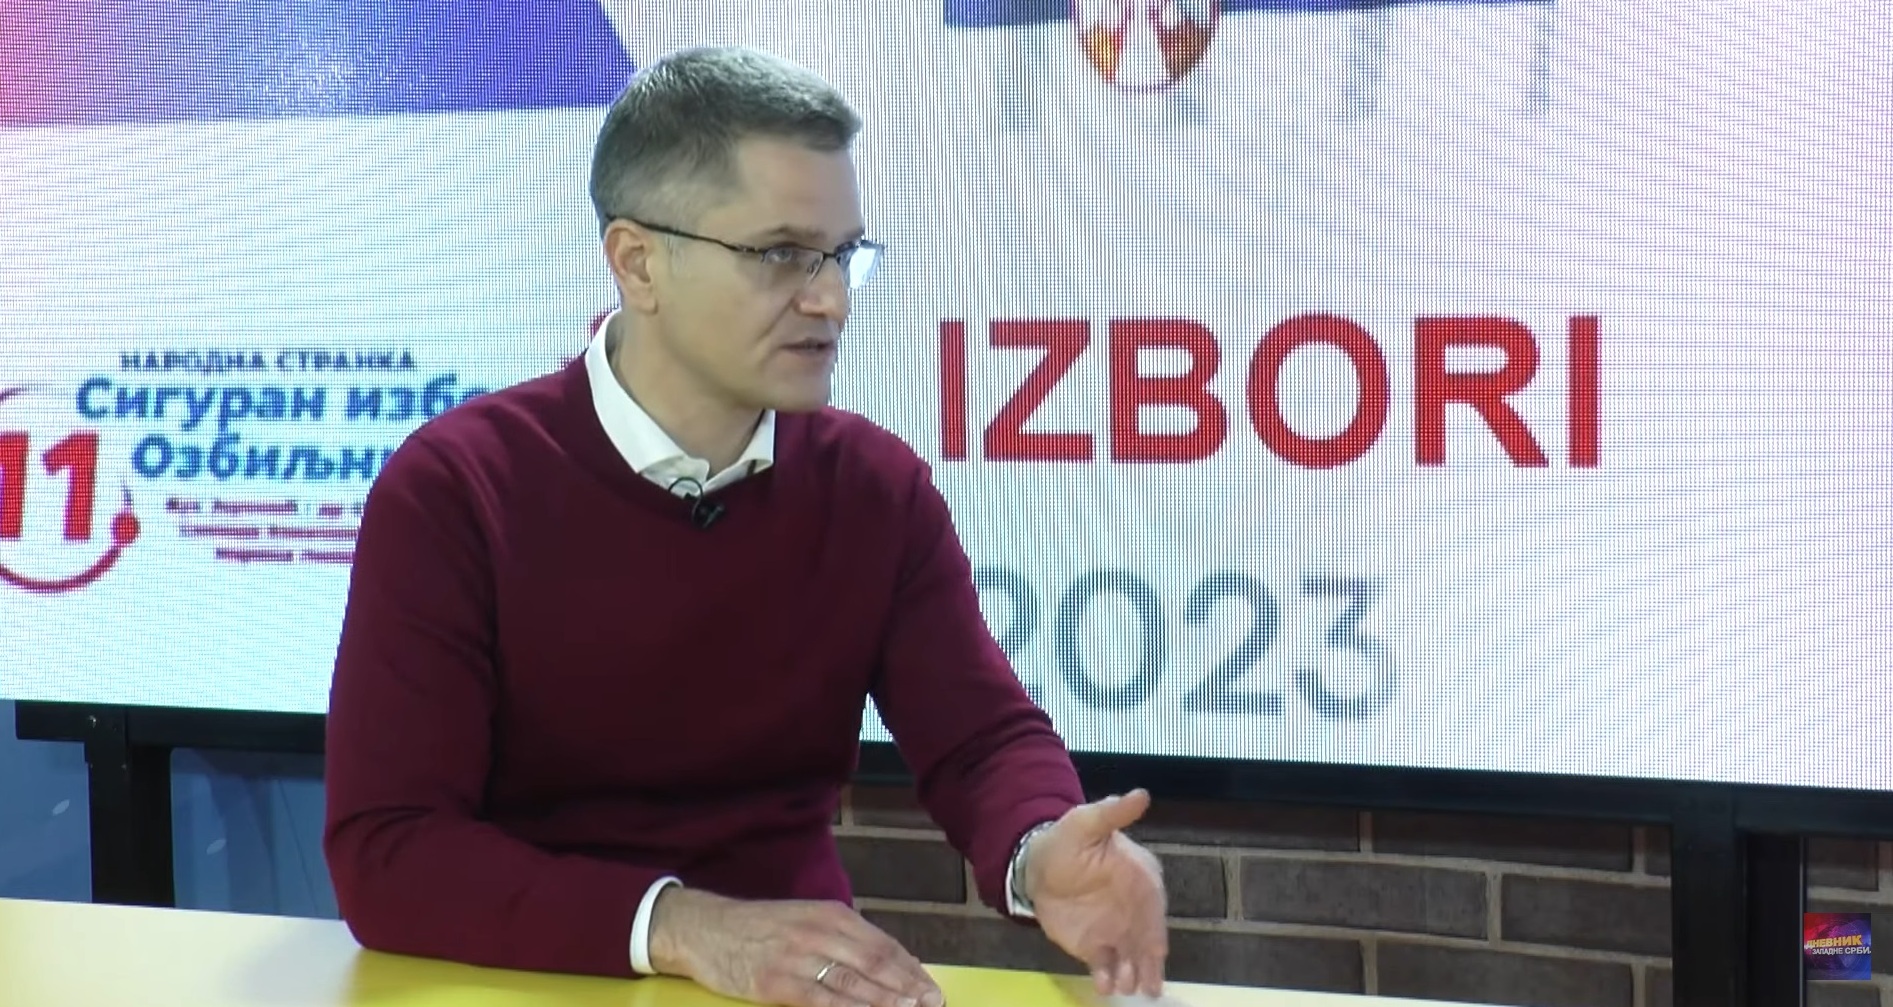 Јеремић: Народна странка је најсигурнији избор – нема договора са режимом, нема мењања ставова после избора